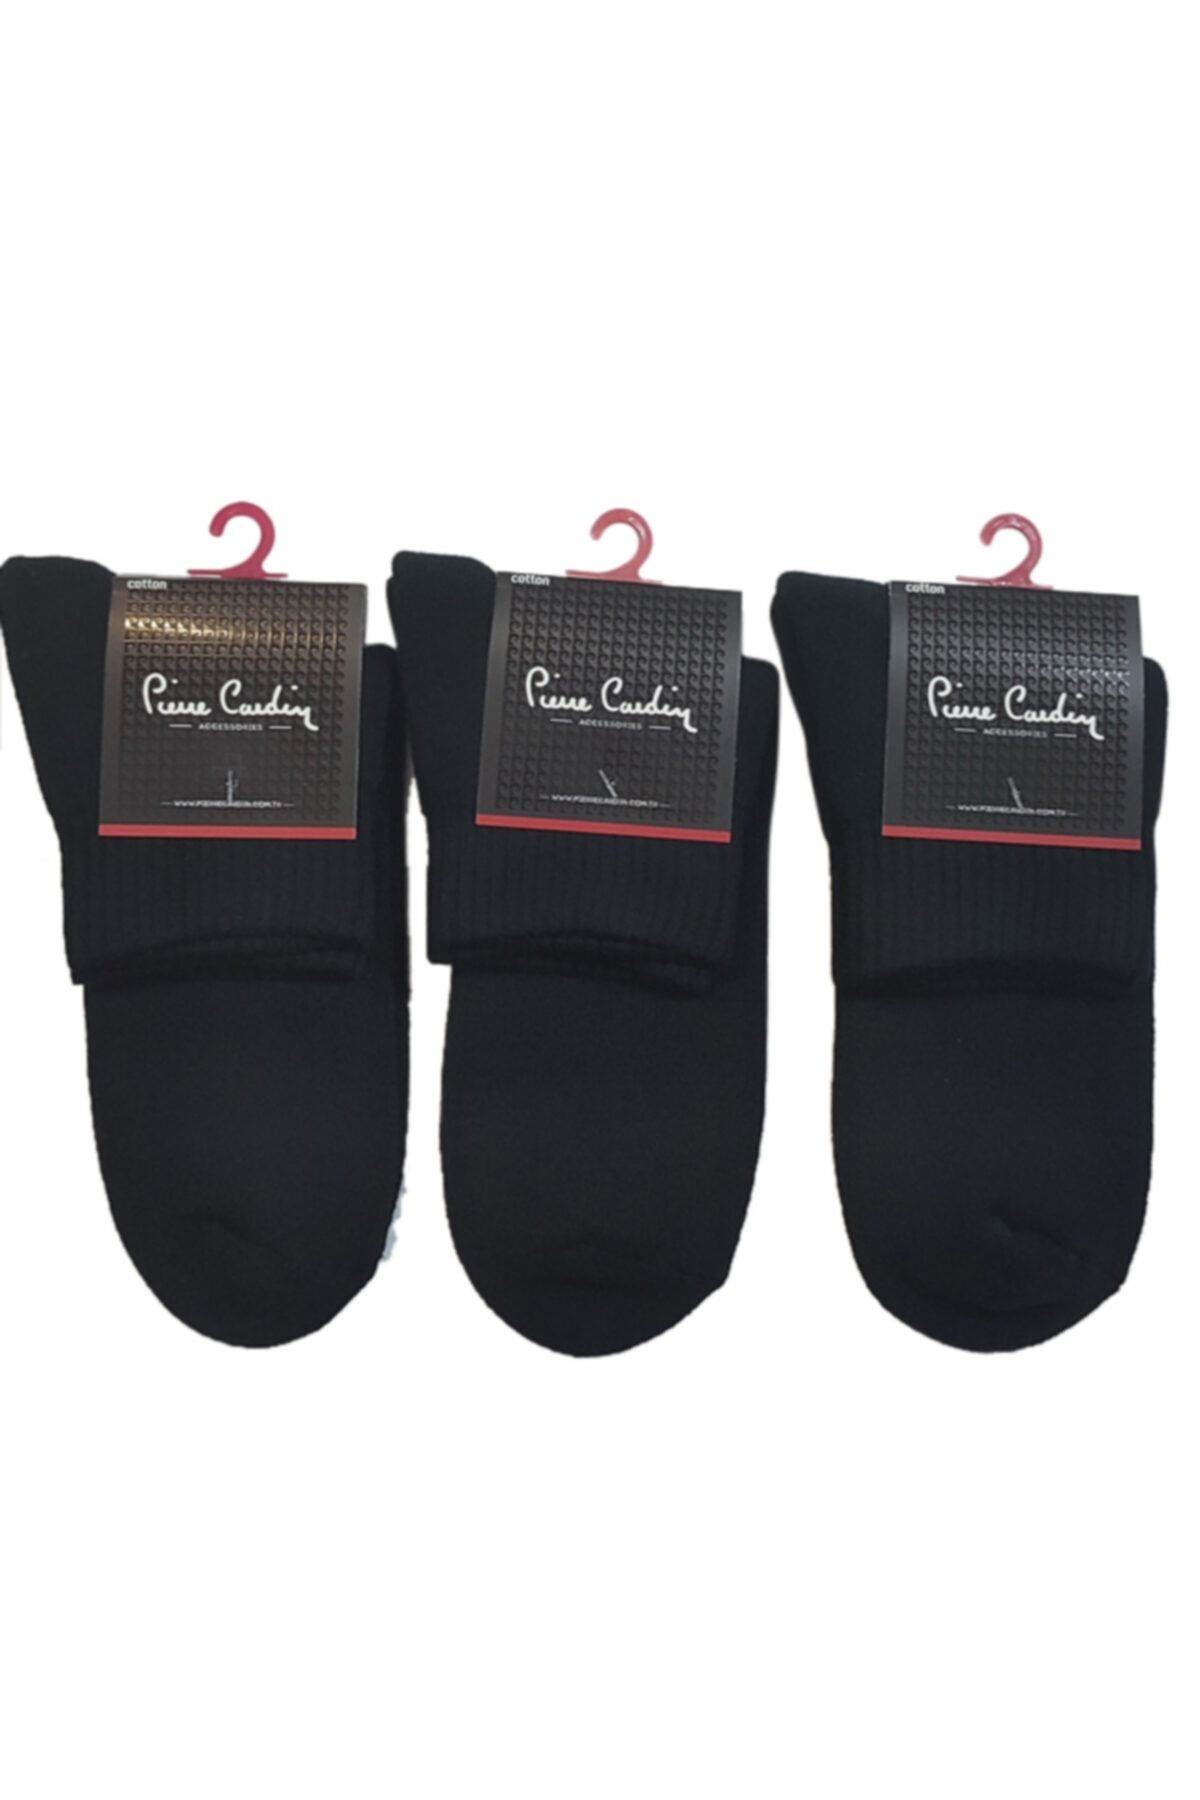 Pierre Cardin Termal Havlu Kısa Konç Erkek Çorap 3 Lü